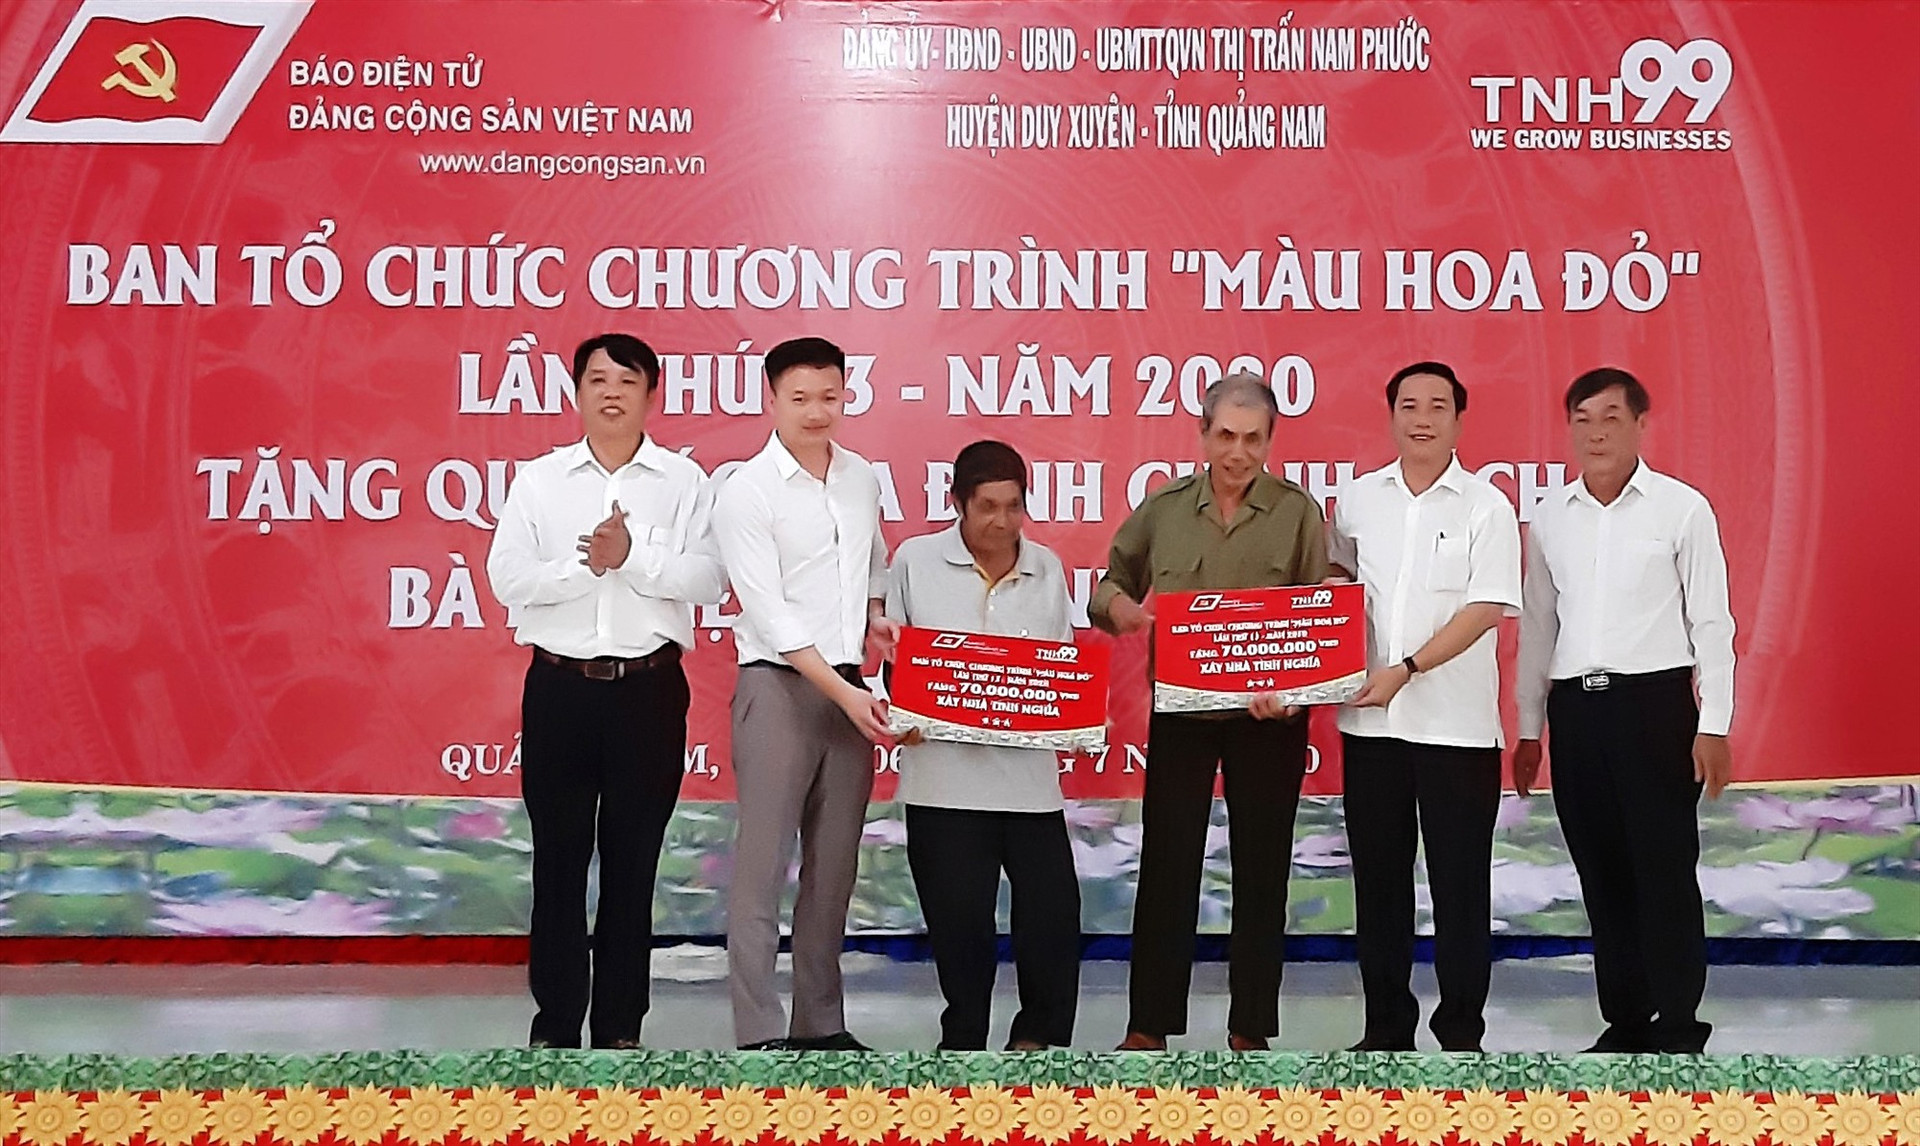 Thị trấn Nam Phước vừa phối hợp với Báo điện tử Đảng Cộng sản tổ chức chương trình “Màu hoa đỏ” nhằm tặng quà và hỗ trợ xây dựng 2 nhà tình nghĩa cho gia đình chính sách. Ảnh: T.S